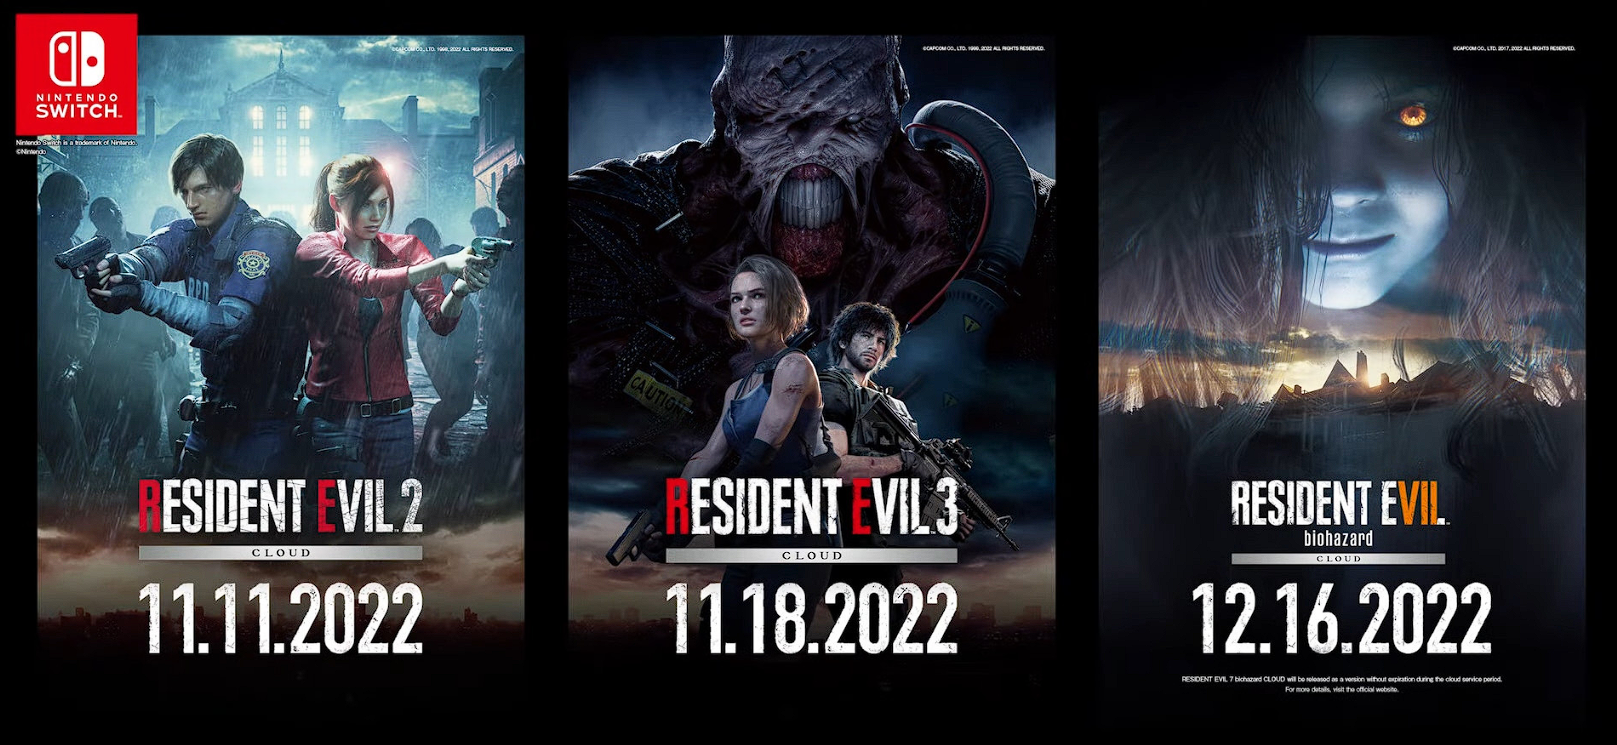 Capcom ha annunciato l'uscita dei remake di Resident Evil 2 e 3 su Nintendo Switch a novembre, mentre Resident Evil 7 è atteso per il 16 dicembre.-2